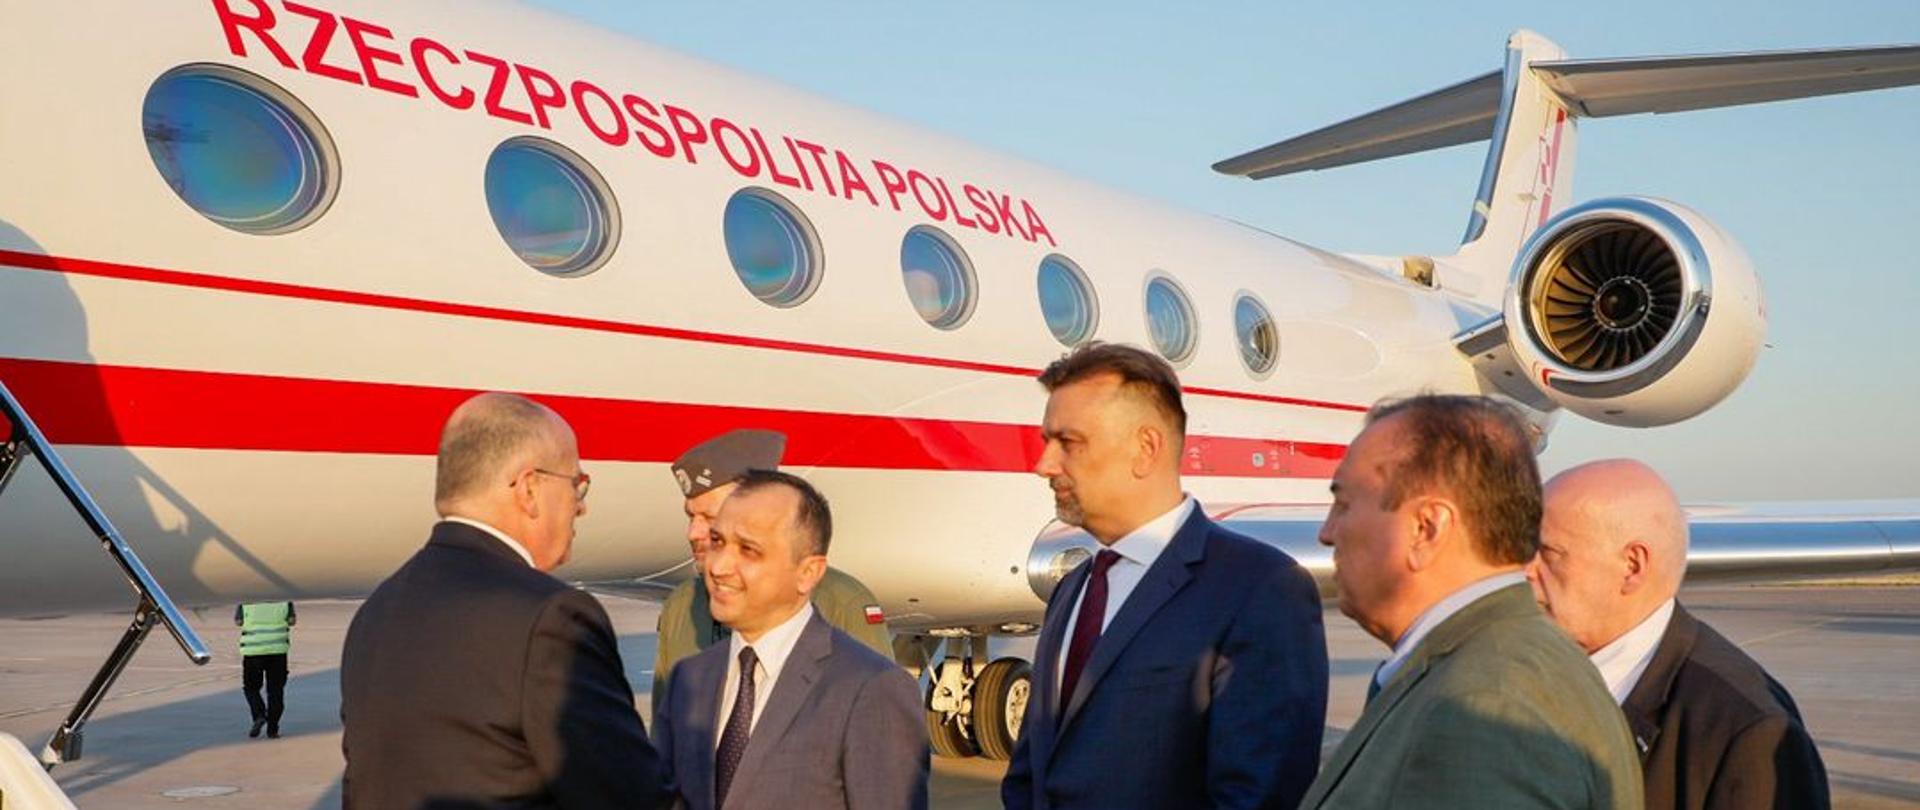 Министр иностранных дел Збигнев Рау начал официальный визит в Узбекистане.